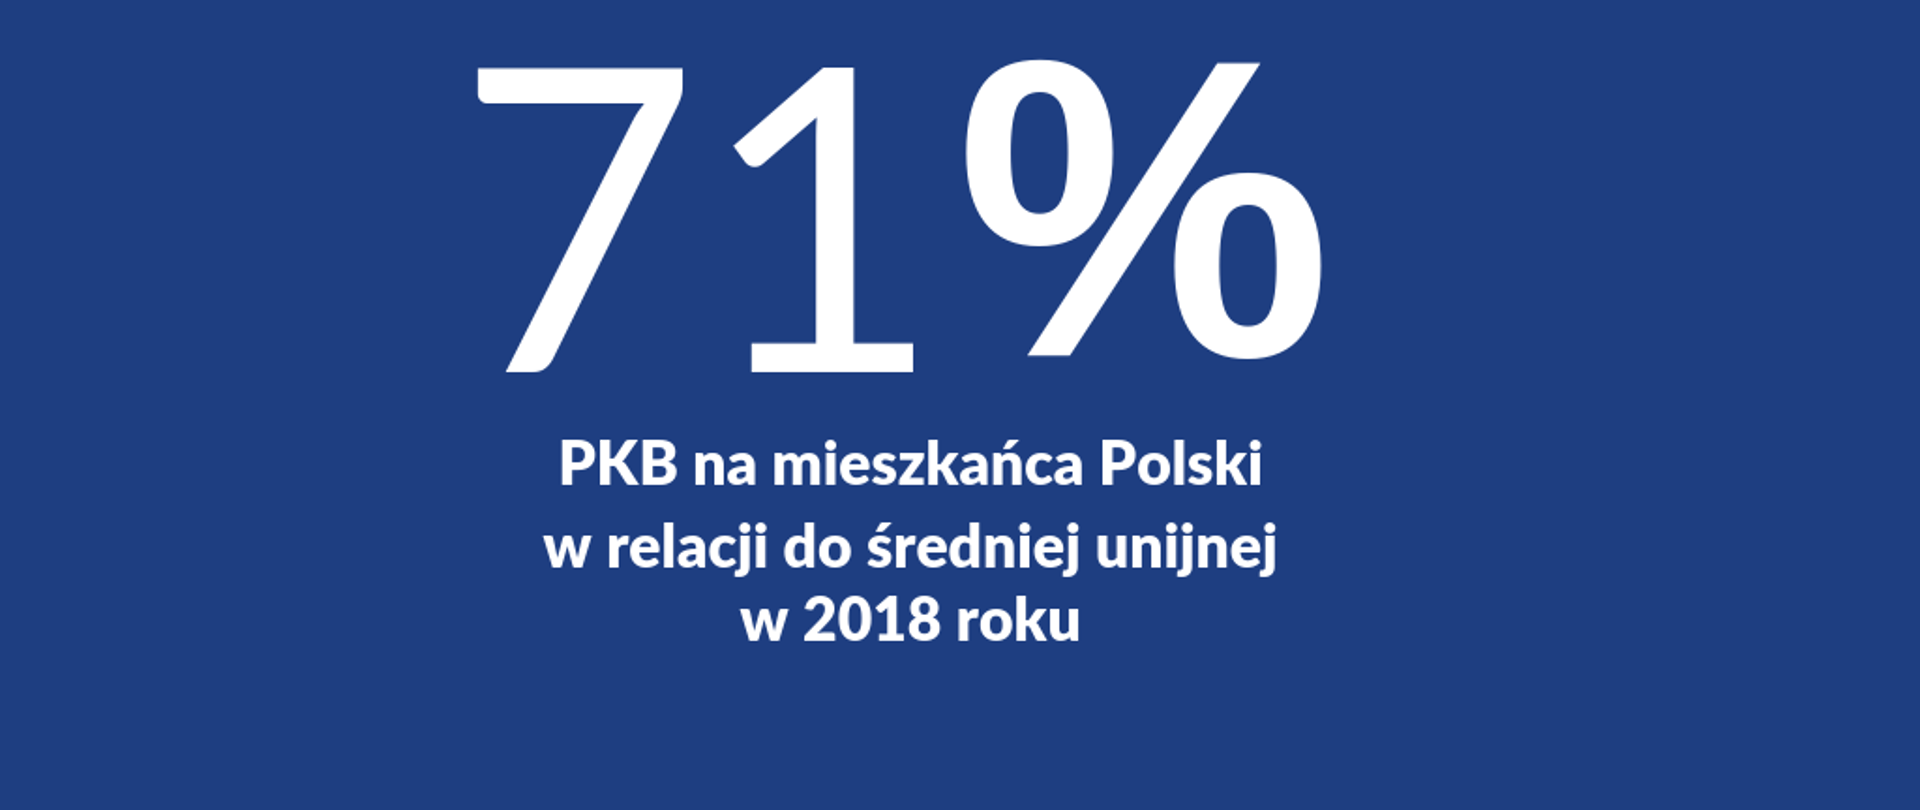 Grafika z napisem 71% PKB na mieszkańca Polski w relacji do średniej unijnej w 2018 roku 